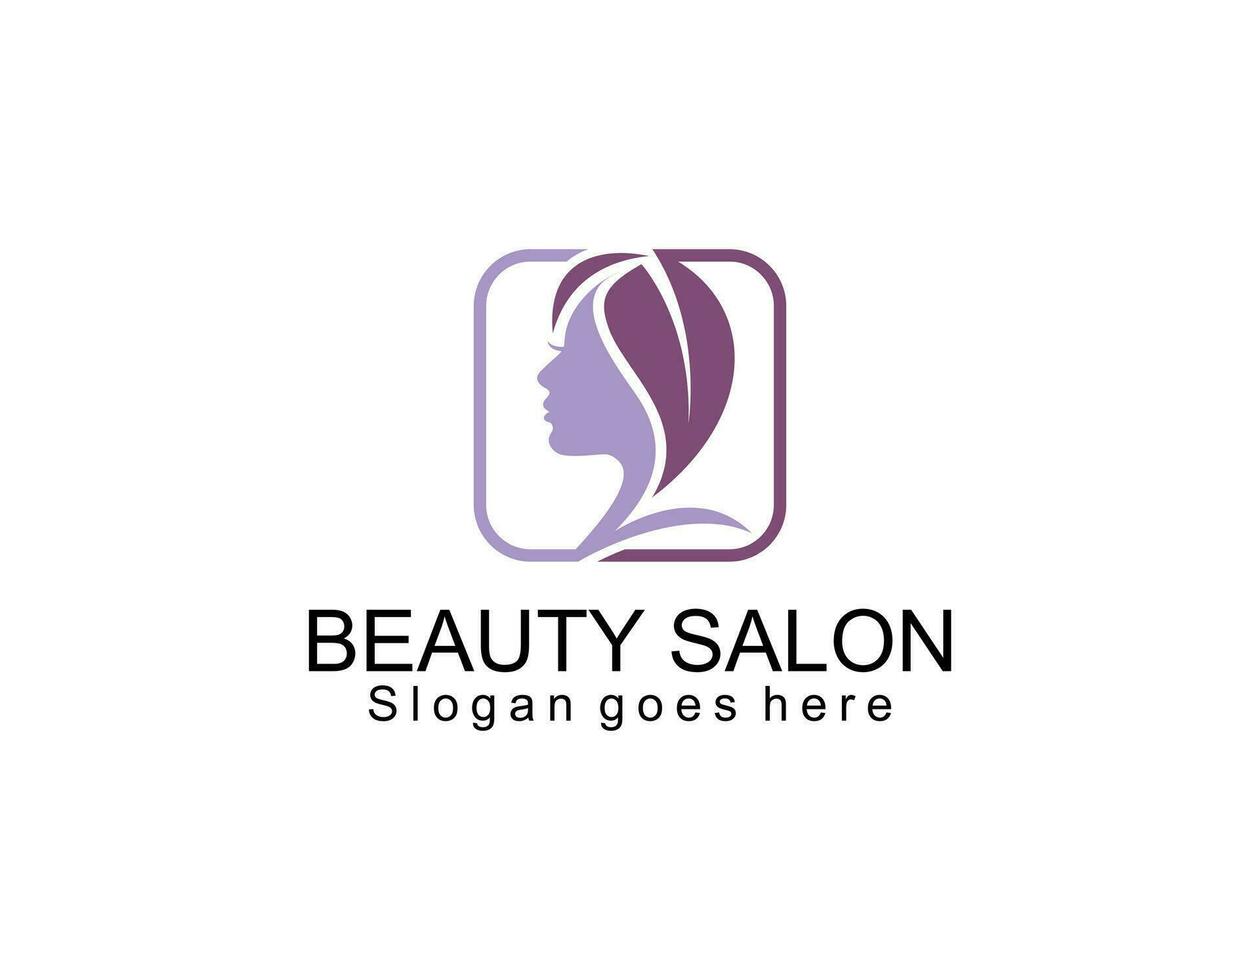 la cara de las mujeres combina el logotipo de la flor y la rama para el salón de belleza, spa, cosmética y cuidado de la piel. elegante diseño de logotipo y tarjeta de visita. vector